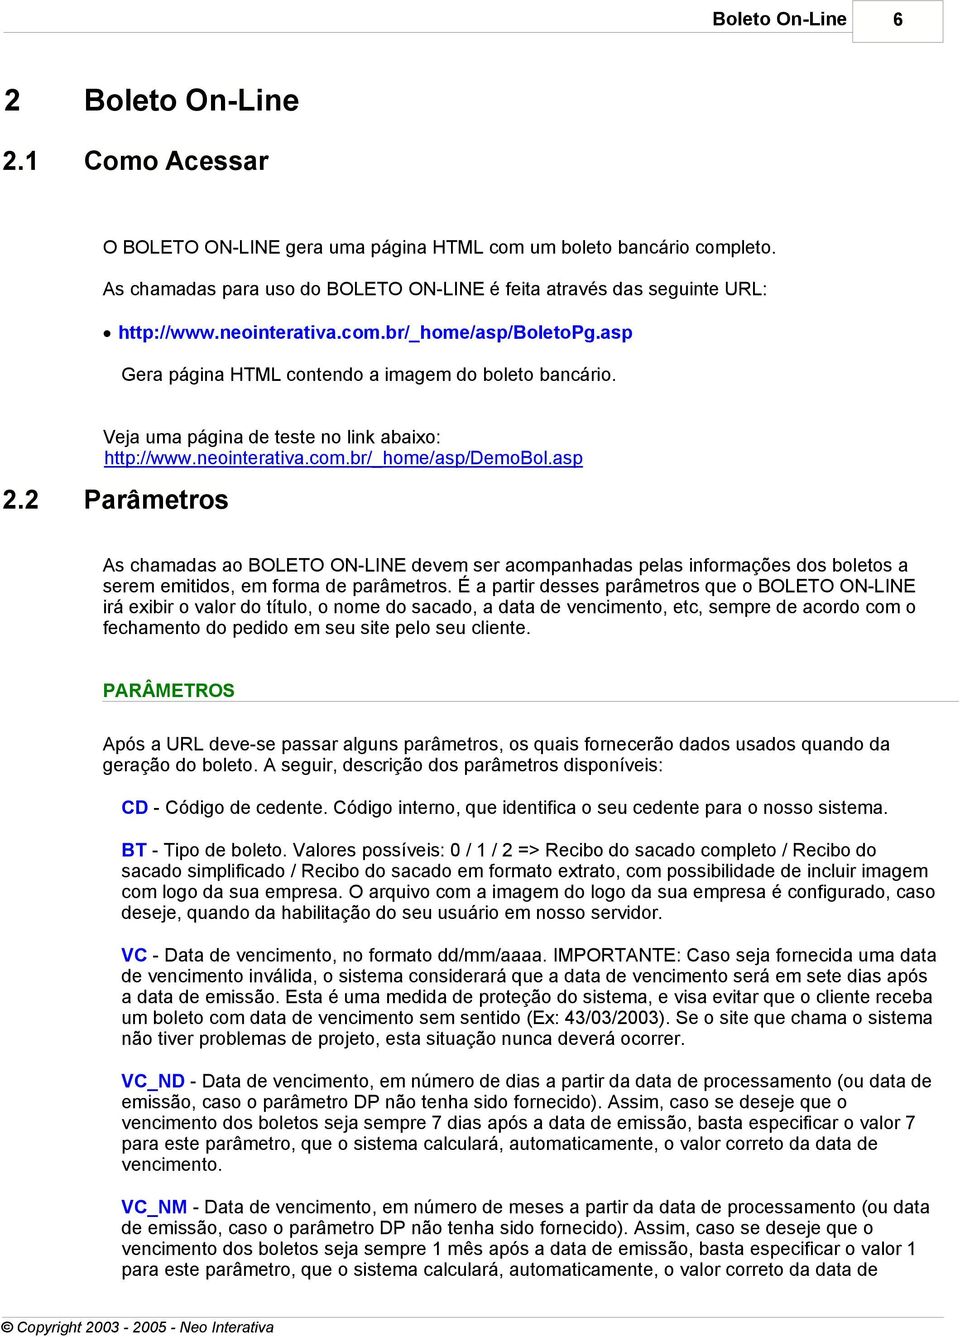 Veja uma página de teste no link abaixo: http://www.neointerativa.com.br/_home/asp/demobol.asp 2.